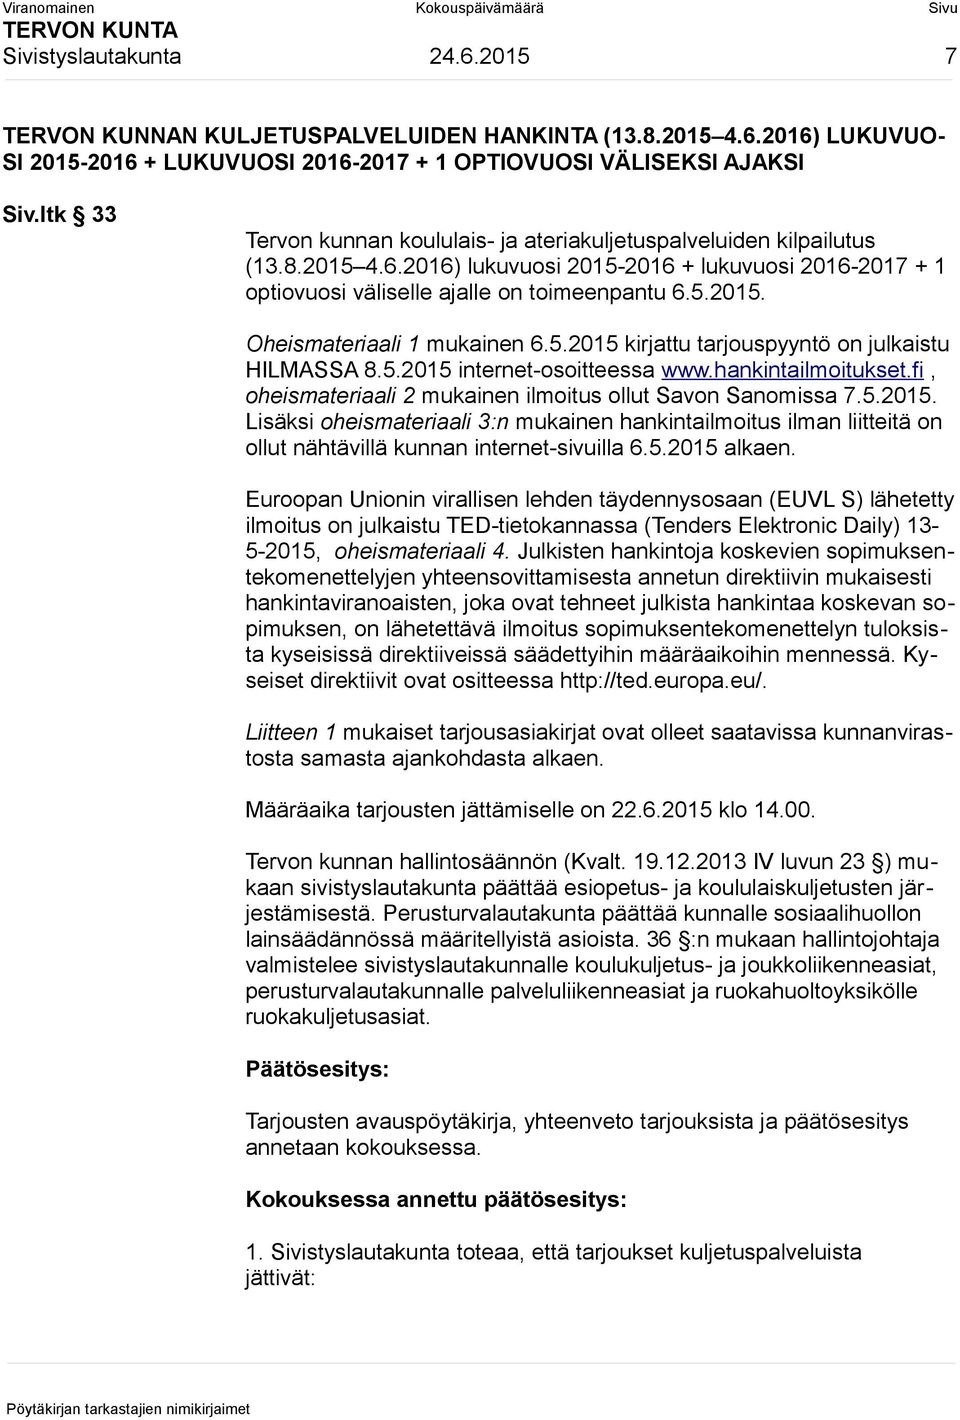 5.2015 kirjattu tarjouspyyntö on julkaistu HILMASSA 8.5.2015 internet-osoitteessa www.hankintailmoitukset.fi, oheismateriaali 2 mukainen ilmoitus ollut Savon Sanomissa 7.5.2015. Lisäksi oheismateriaali 3:n mukainen hankintailmoitus ilman liitteitä on ollut nähtävillä kunnan internet-sivuilla 6.